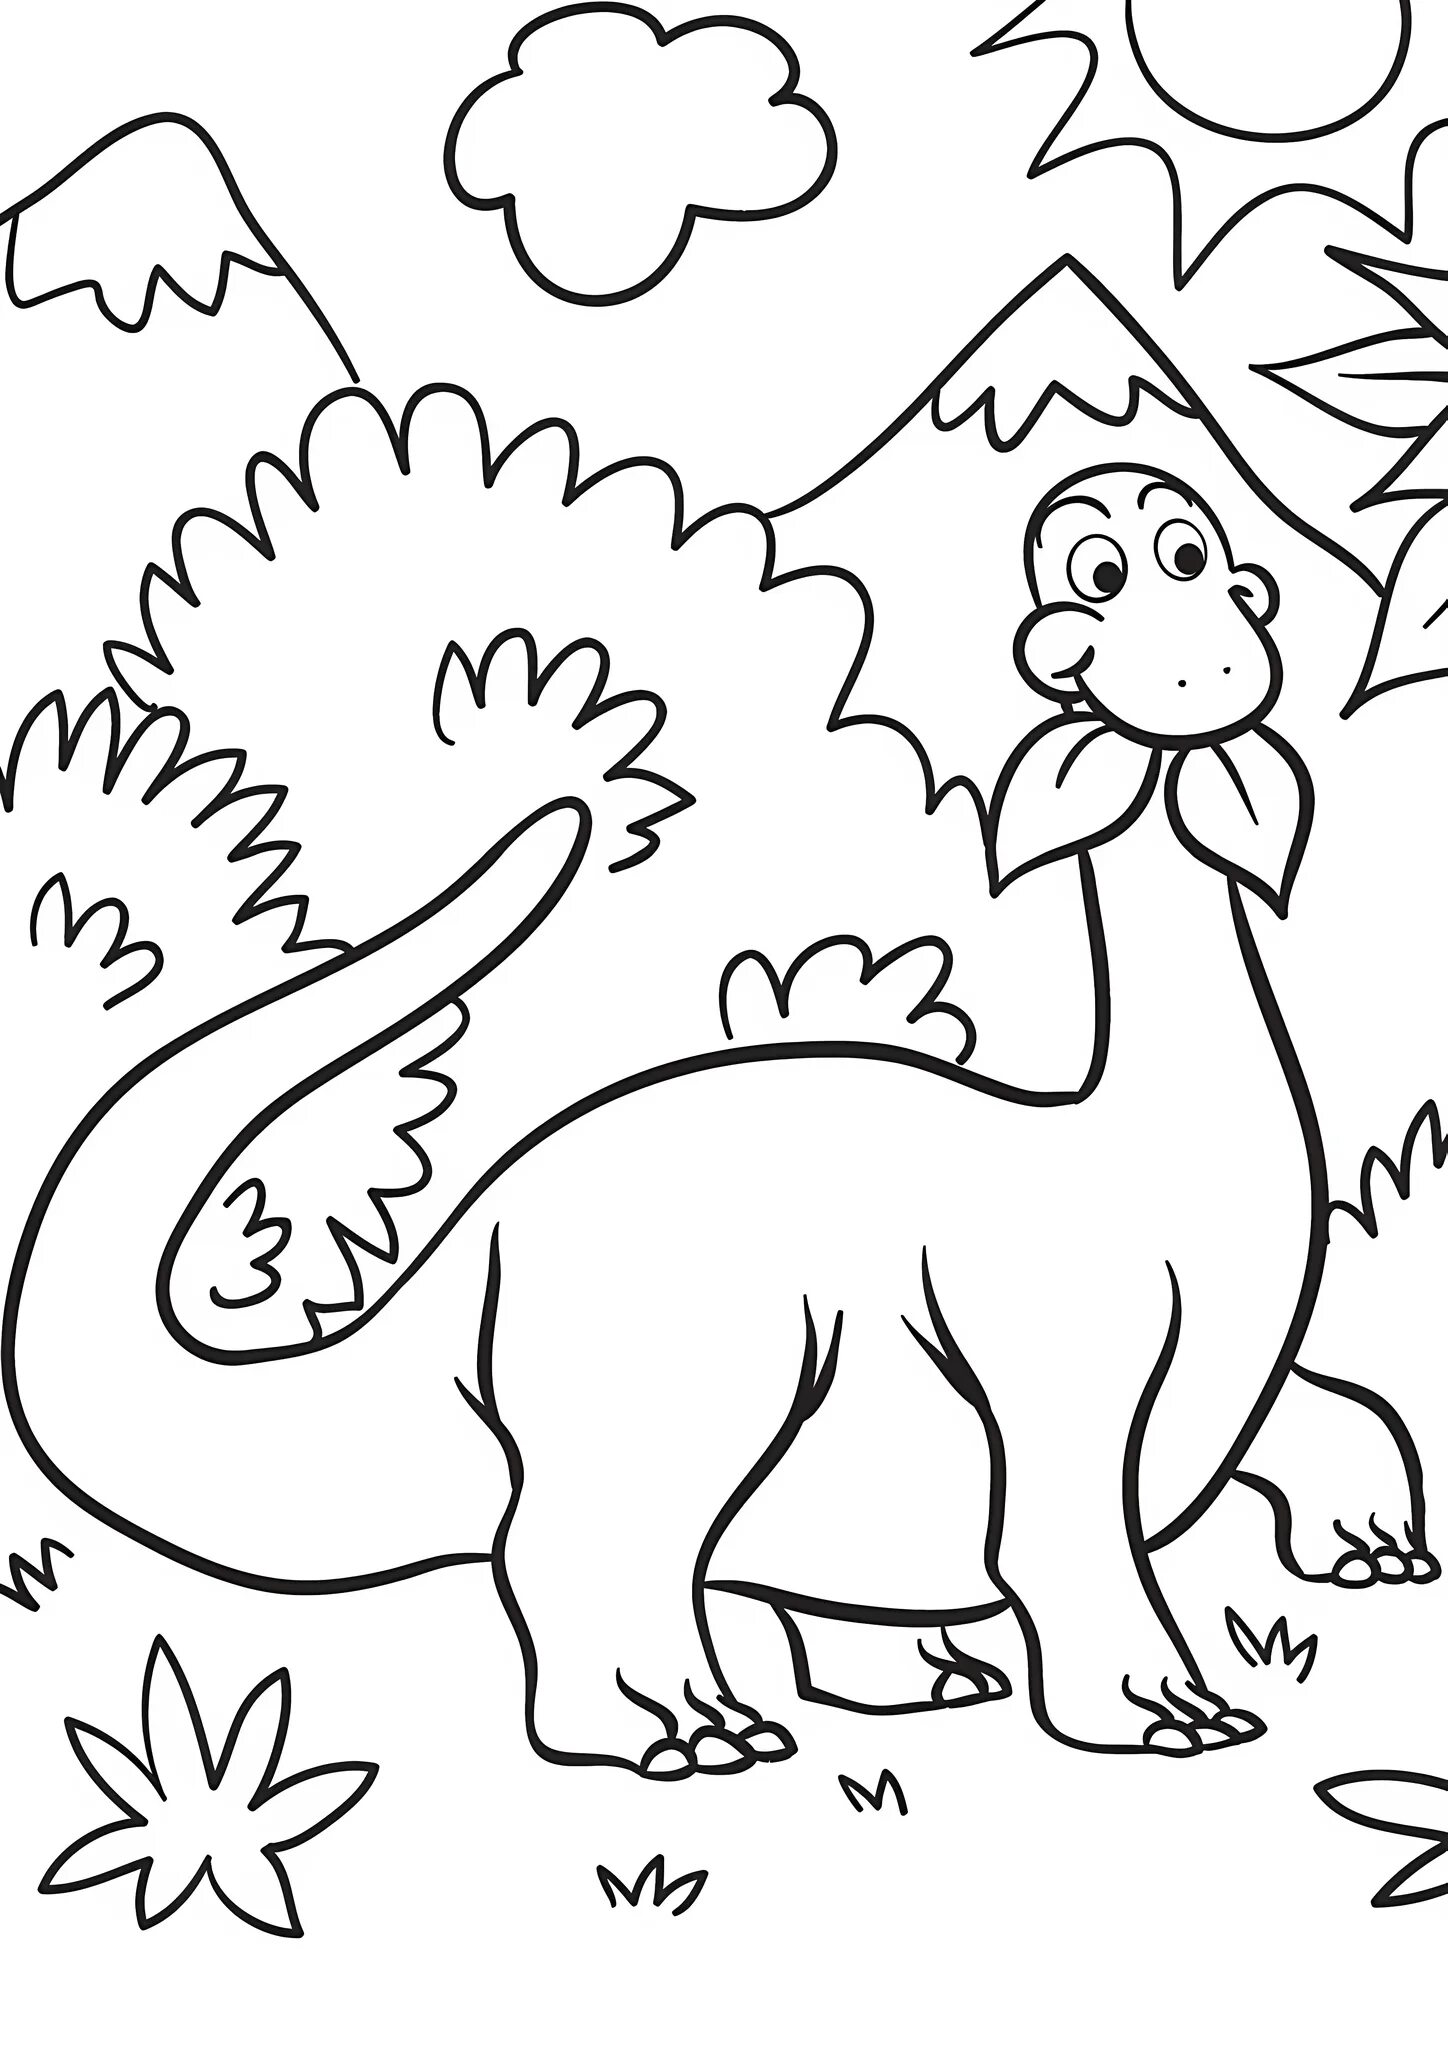 Раскраска динозавр формат а4. Динозавры / раскраска. Динозавры для раскрашивания детям. Динозавр раскраска для детей. Динозаврики раскраска для детей.